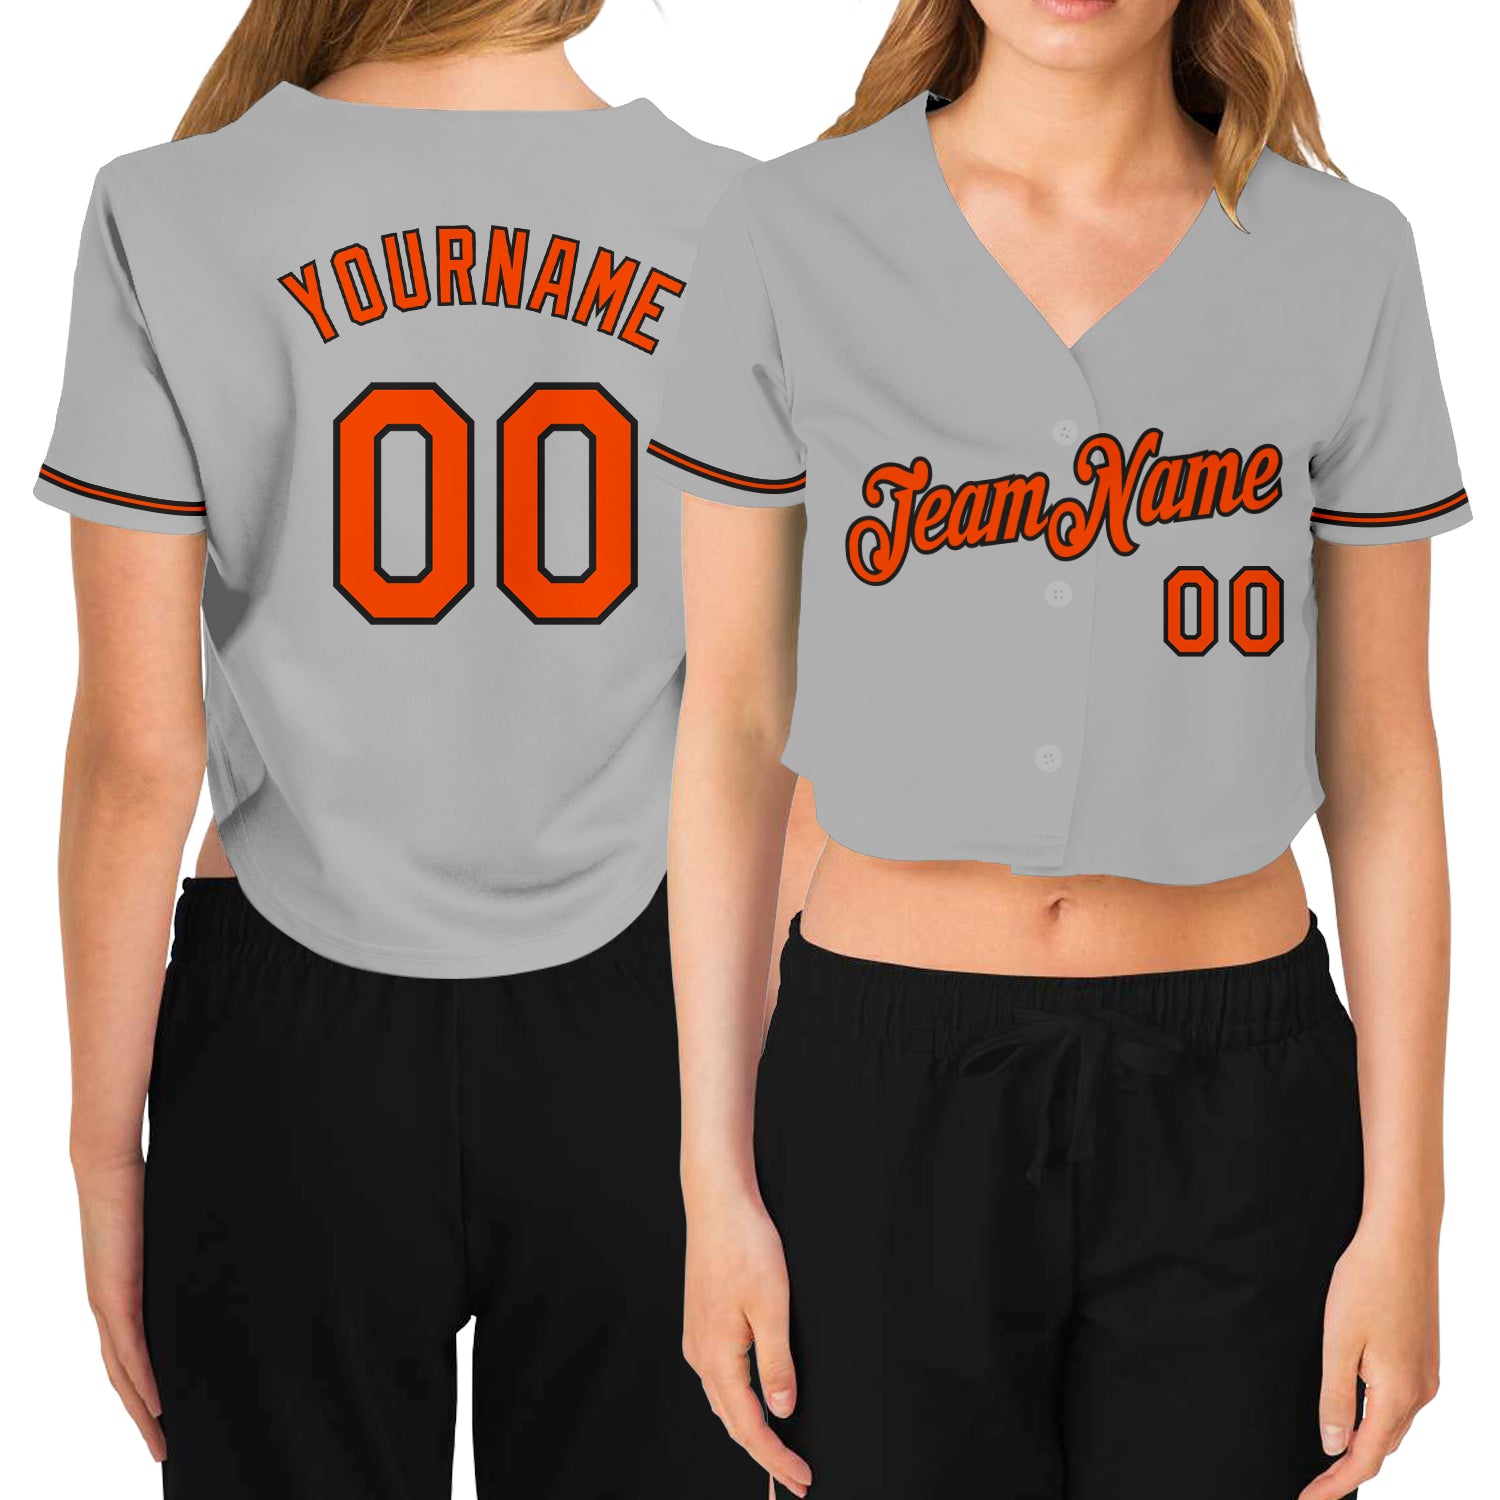 Crop Top Baseball Jerseys & Uniforms - Crop Top Jerseys for Women - FansIdea